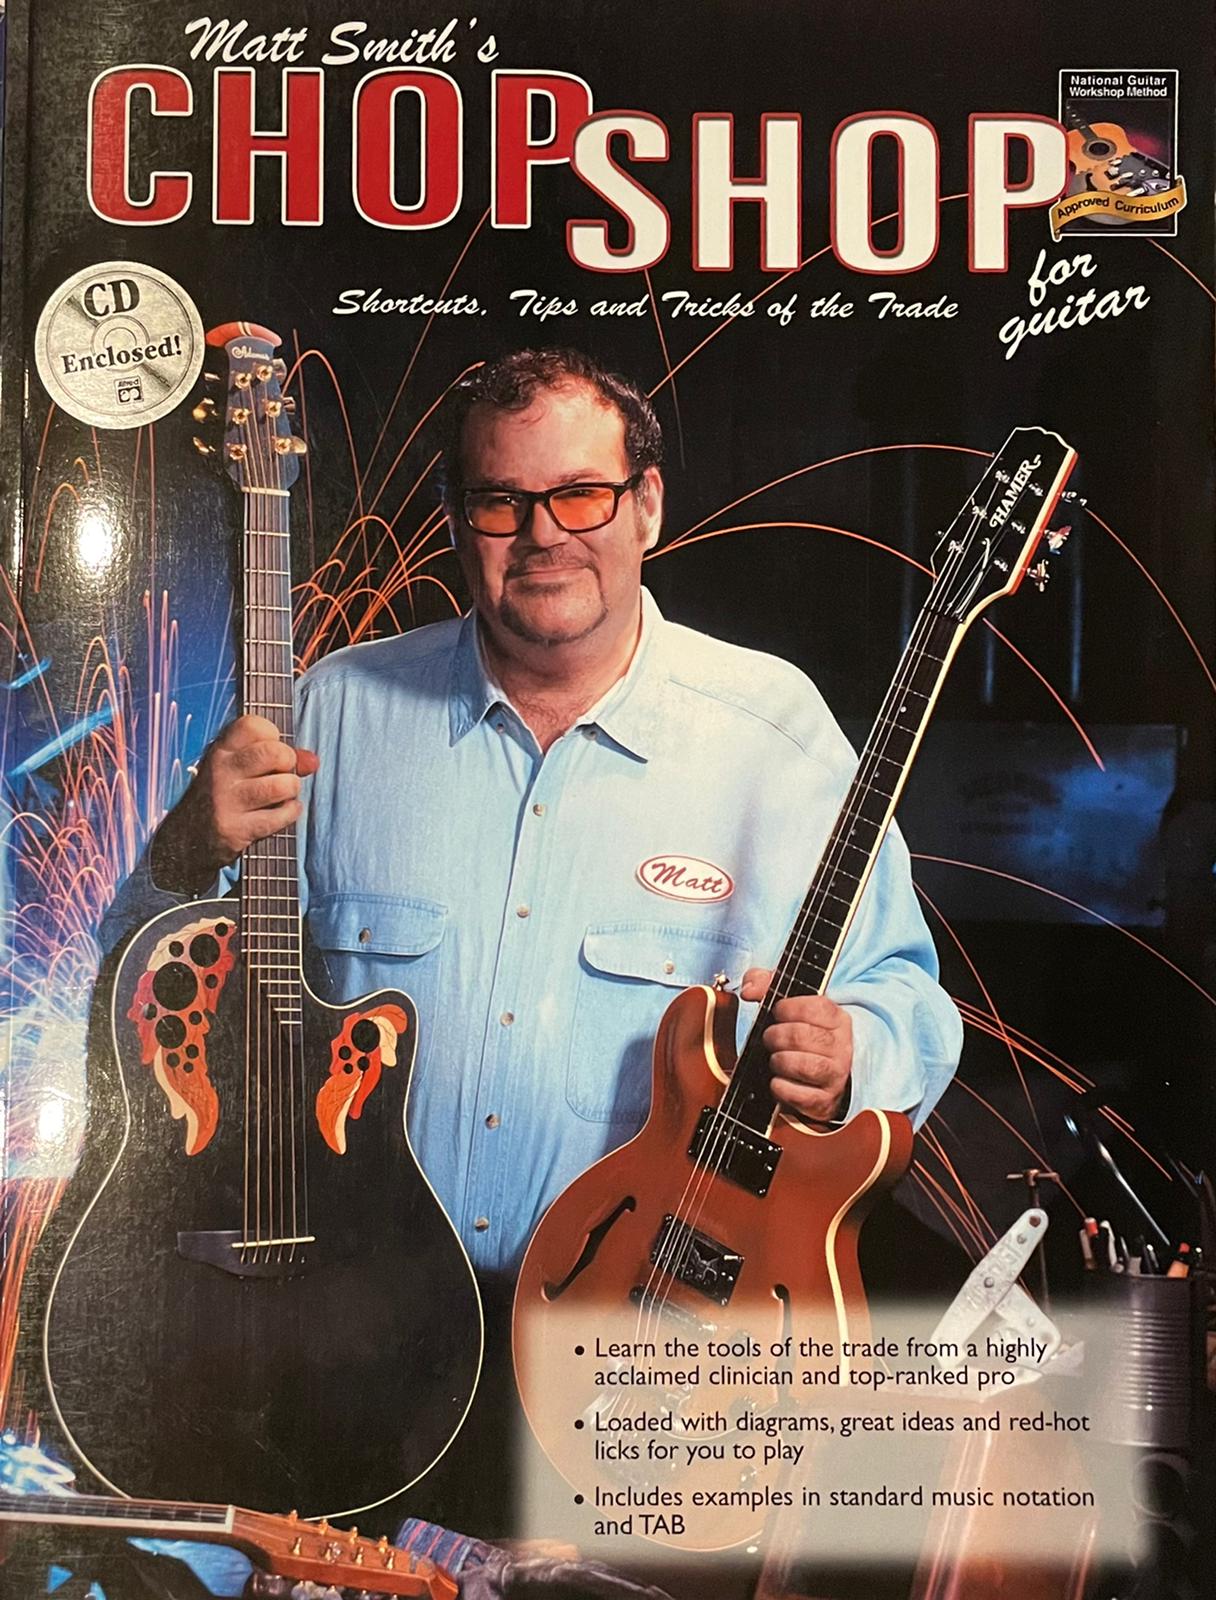 Chop Shop von Matt Smith inkl. CD